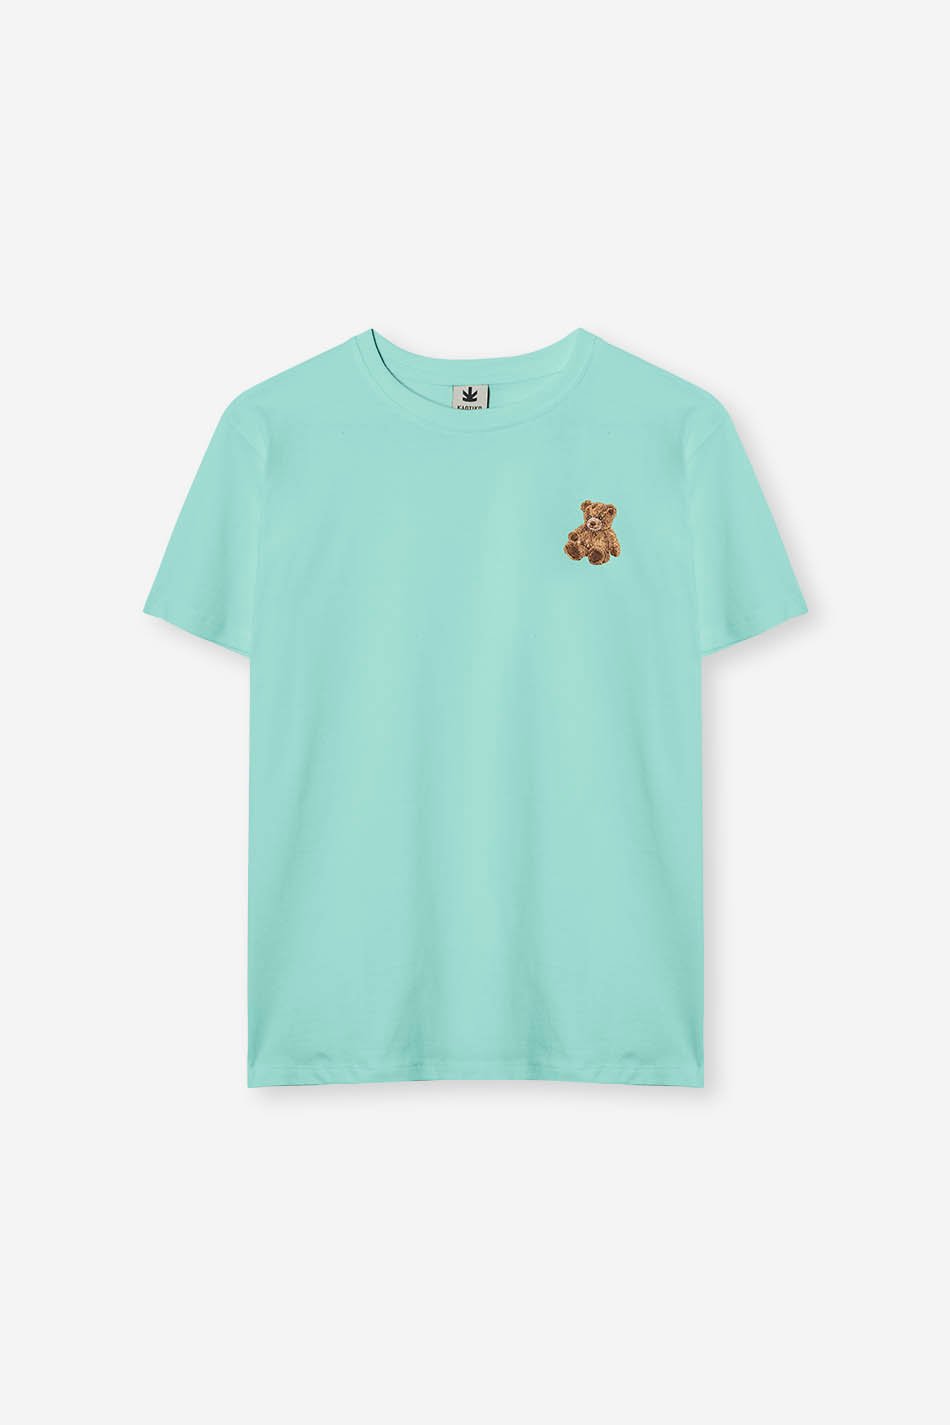 Tee-shirt Bear Toscana